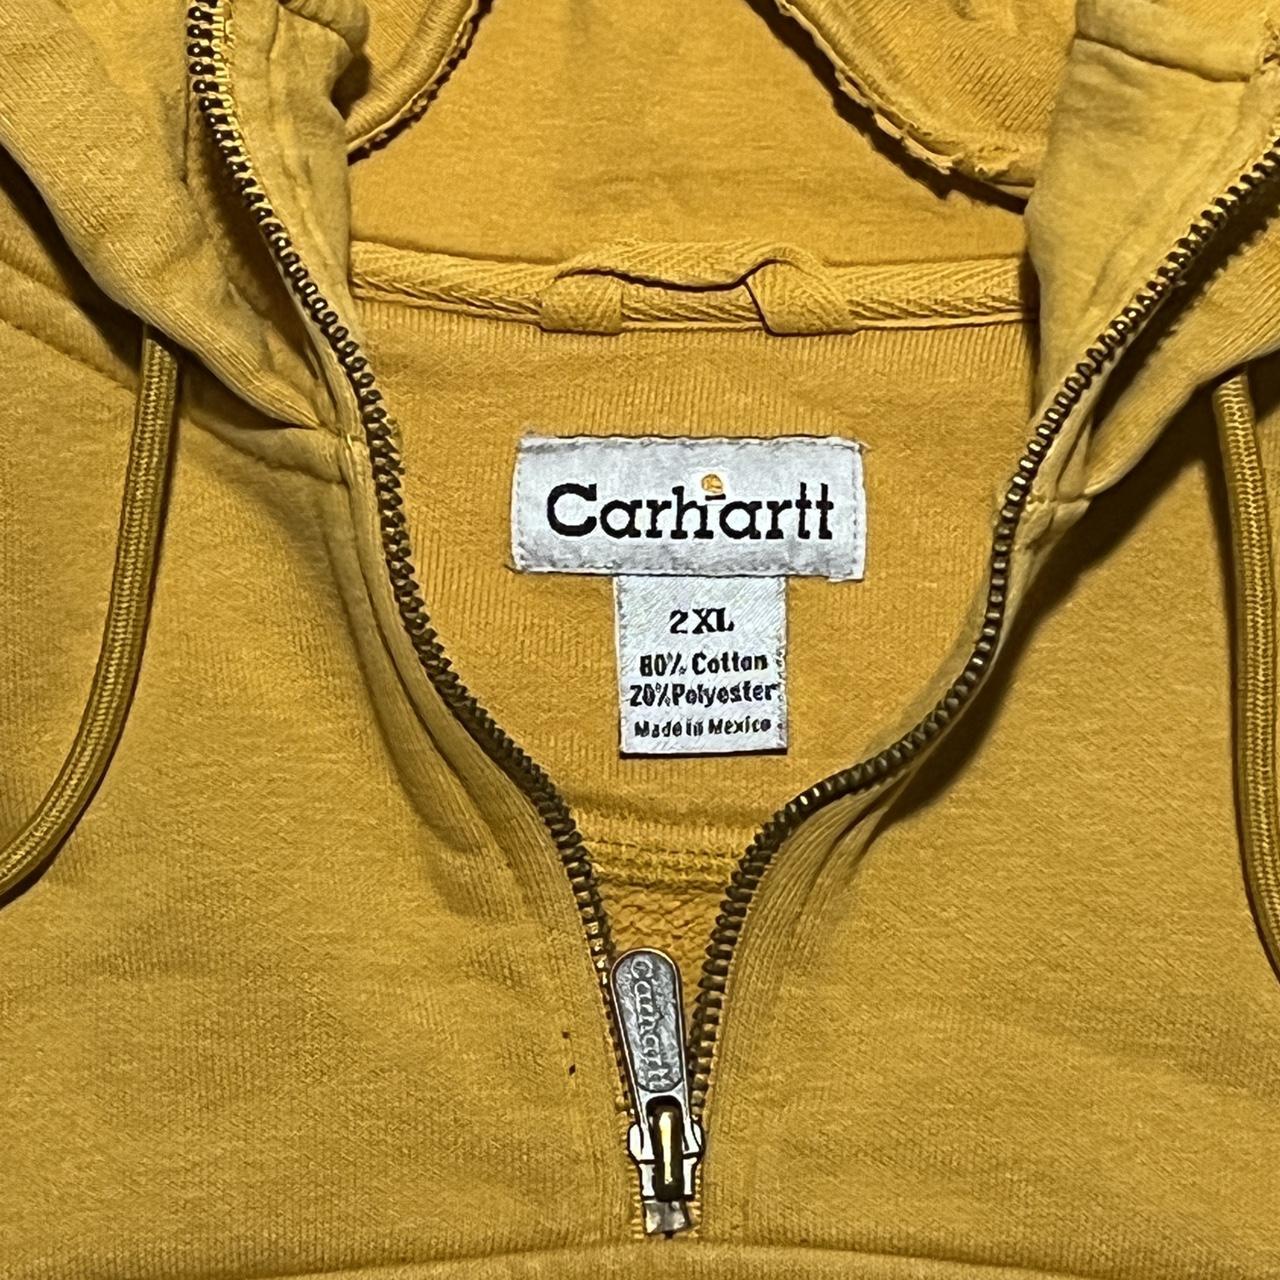 Carhartt hoodie yellow quarter zip great... - Depop